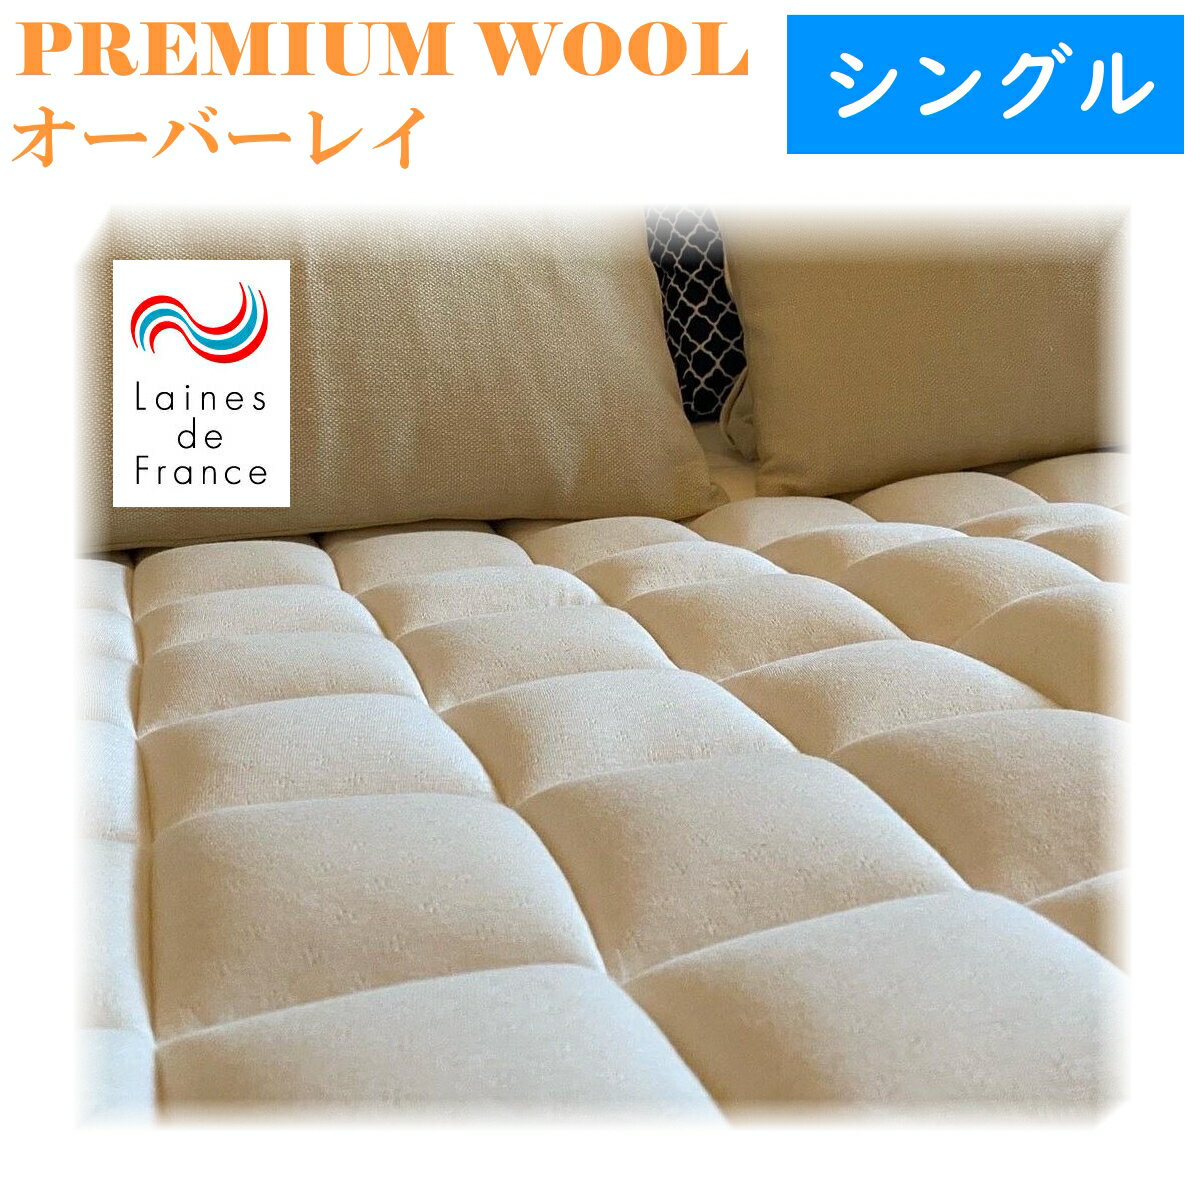 ポイント20倍 送料無料 premium_wool オーバーレイ シングルサイズ ウール100% 綿100% ラ・クーン種羊 寝床内気候 最適 吸湿性　天然の消臭効果 敷パッドに最適 レーヌマーク 日本製 メーカー 直送